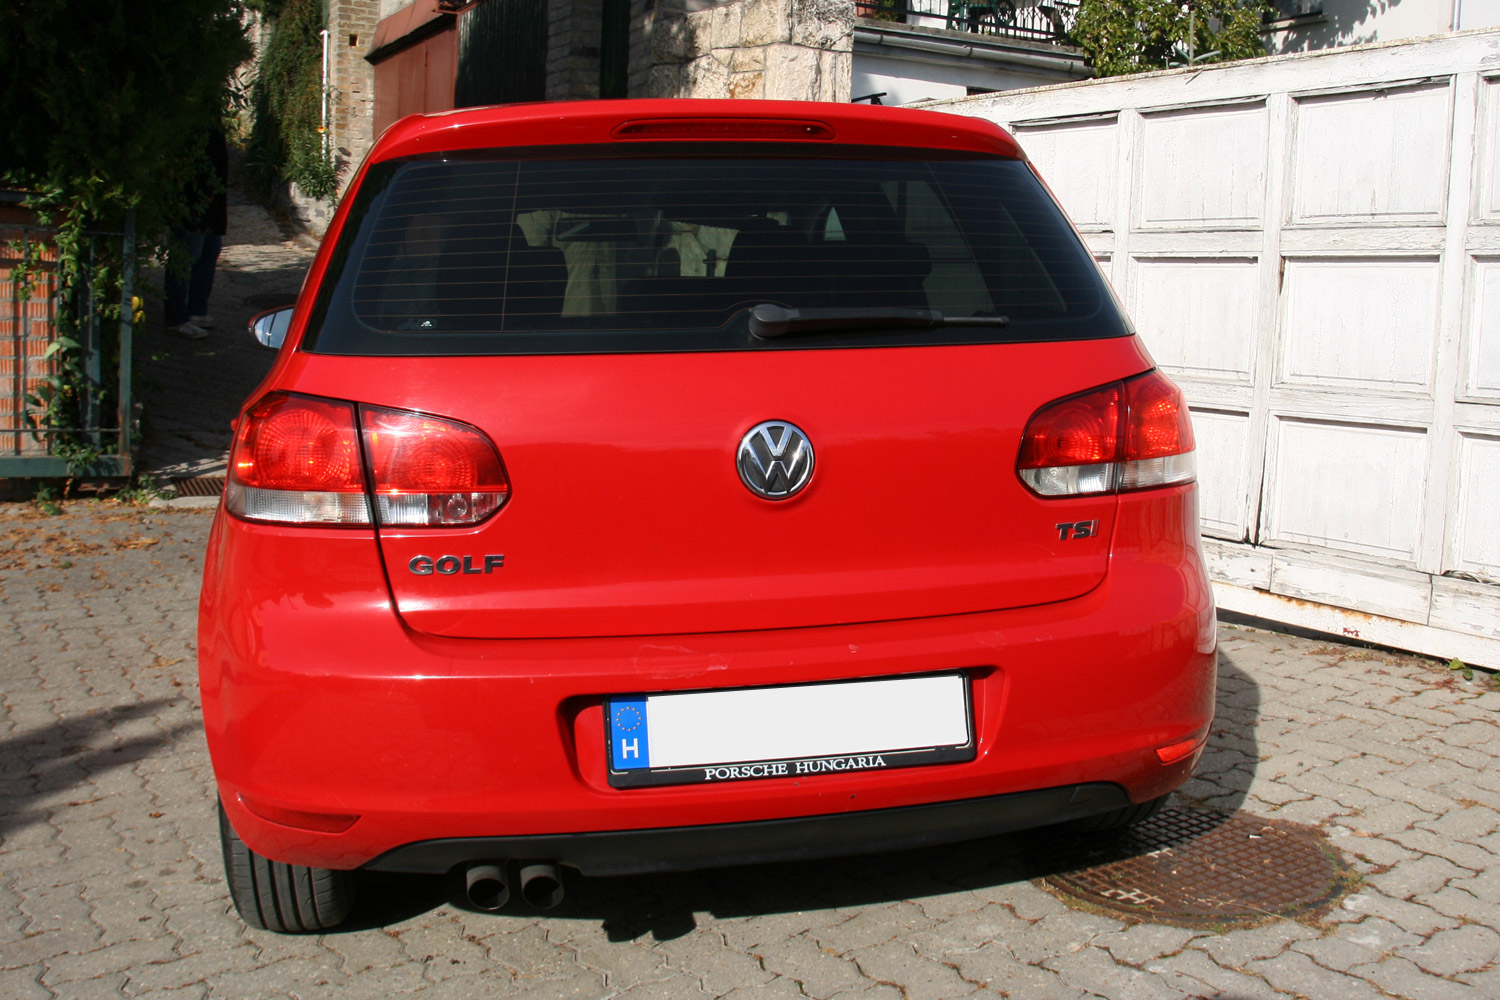 Használt autó: kockázatos Volkswagen Golfot venni? 45